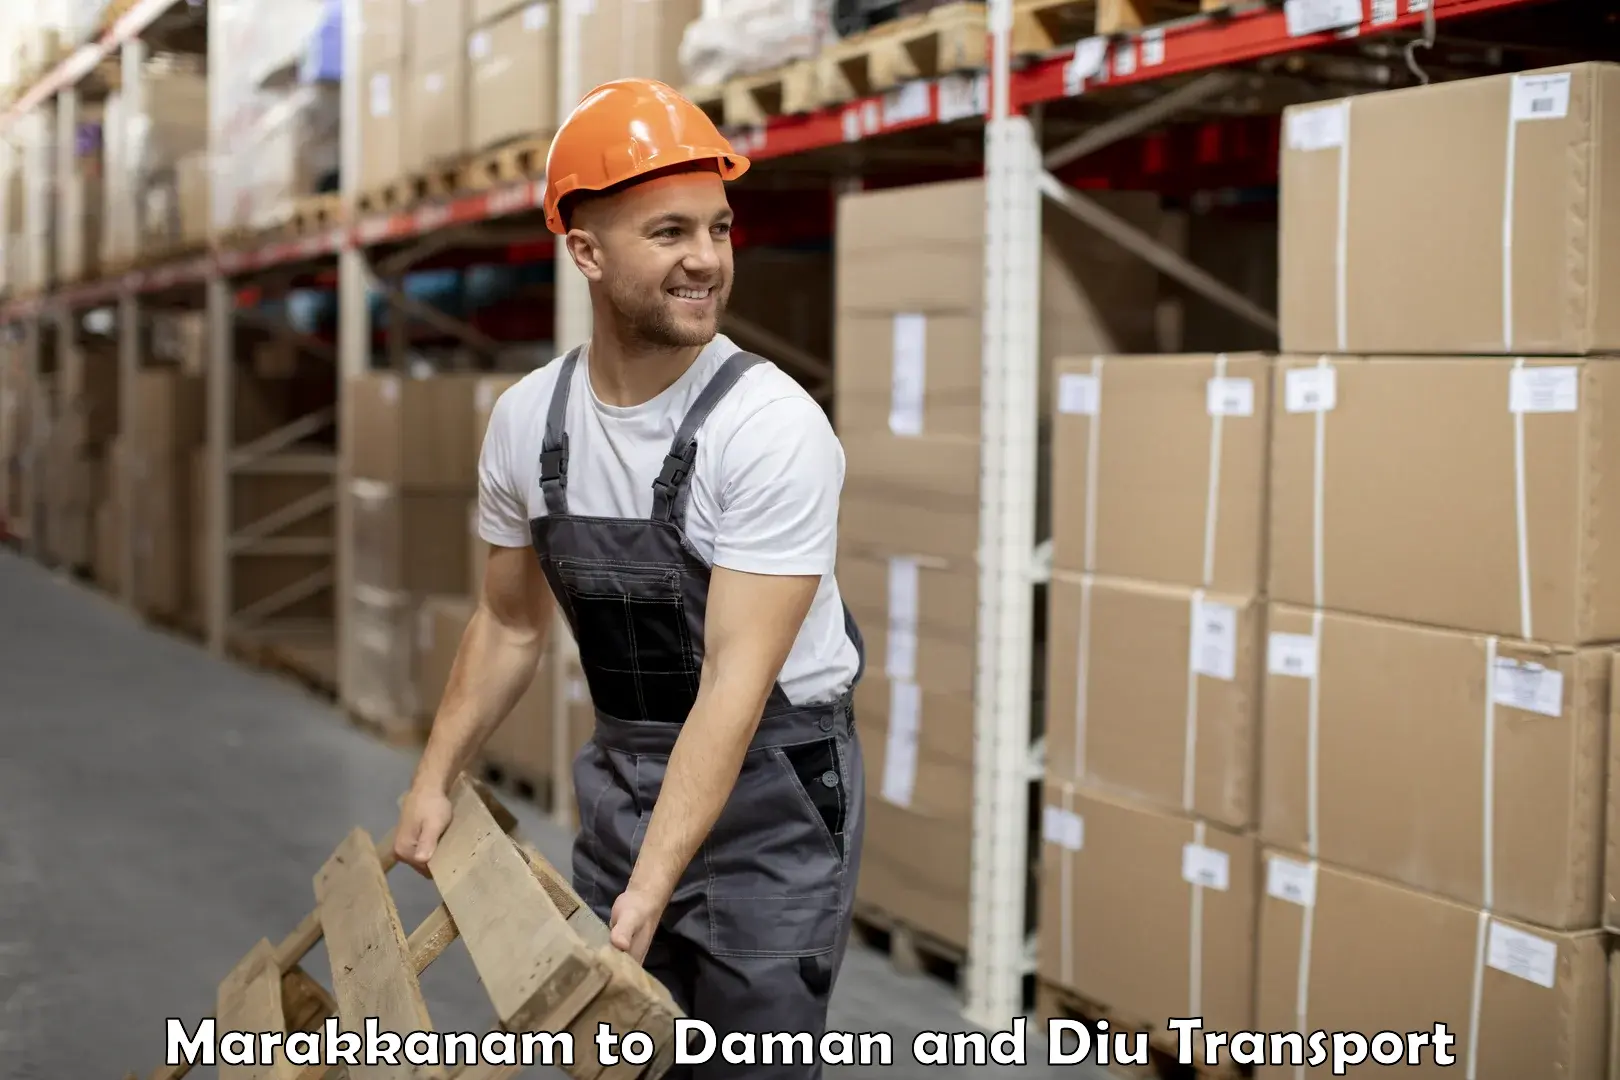 Container transport service Marakkanam to Daman and Diu